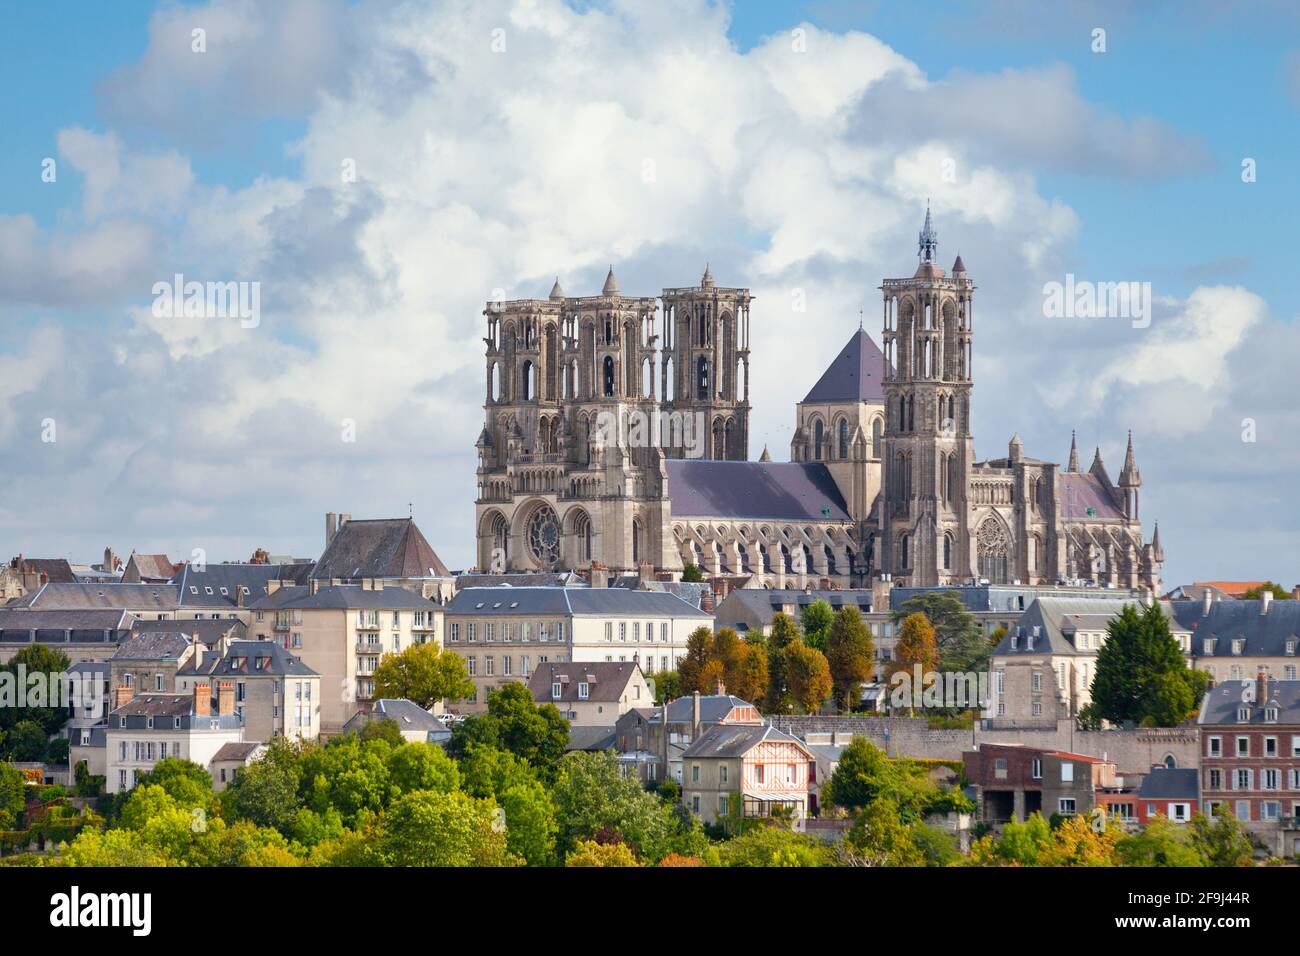 Vue aérienne de la cathédrale de Laon, une église catholique romaine située à Laon, Aisne, hauts-de-France, France. Banque D'Images